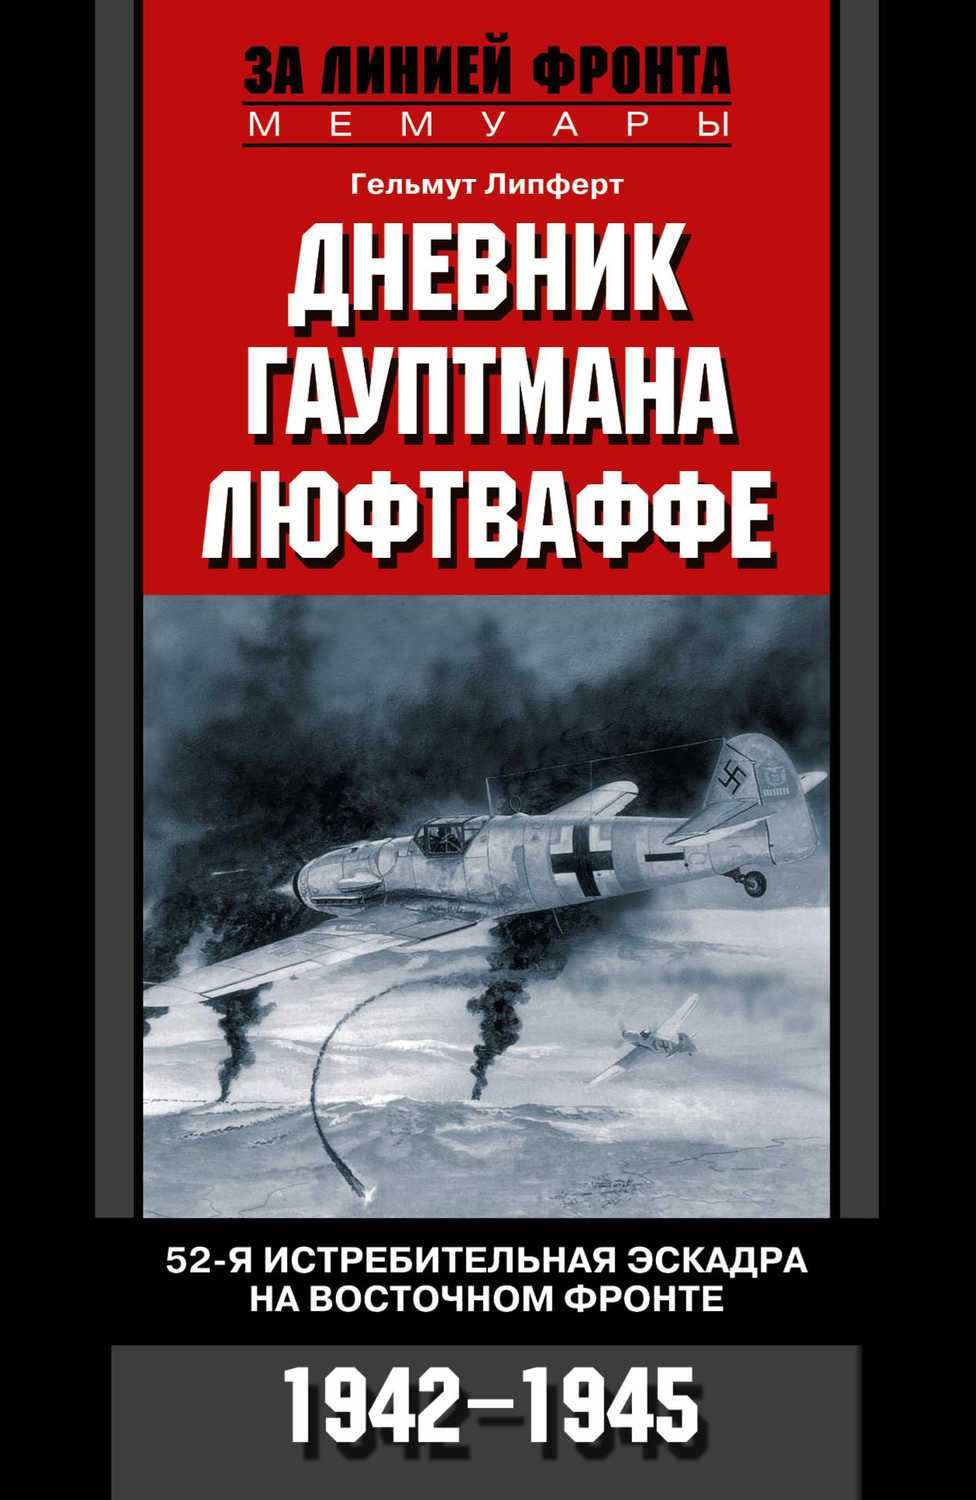 Липферт Гельмут - «Дневник гауптмана люфтваффе. 52-я истребительная эскадра на Восточном фронте. 1942-1945»